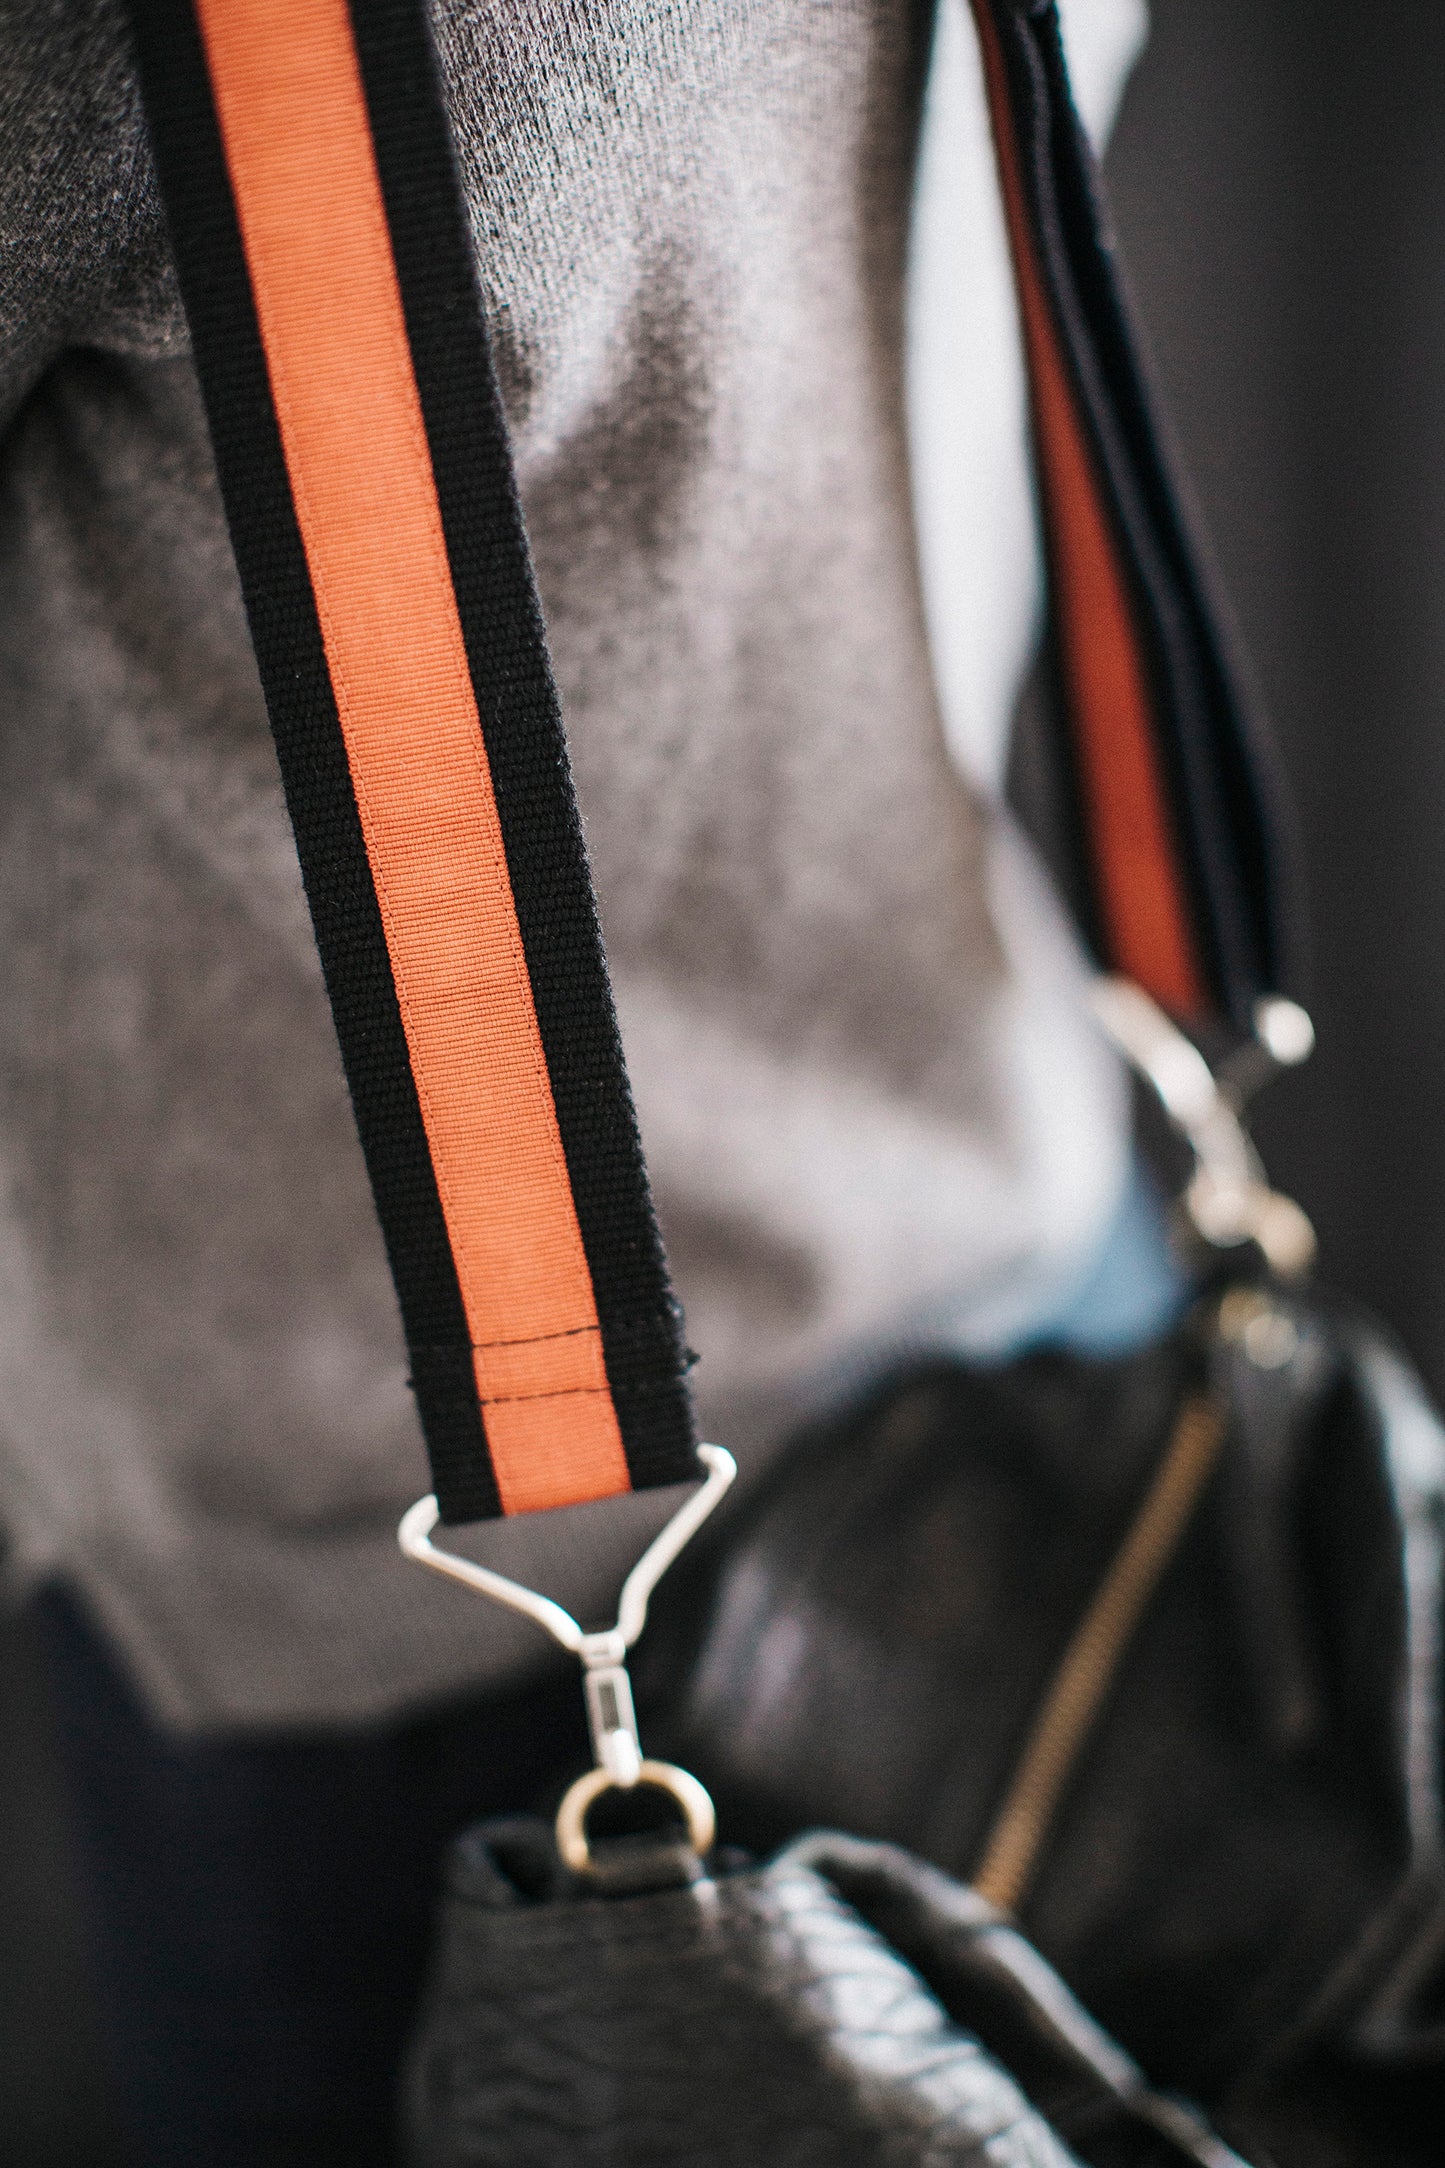 Shoulder bag handle - black and orange